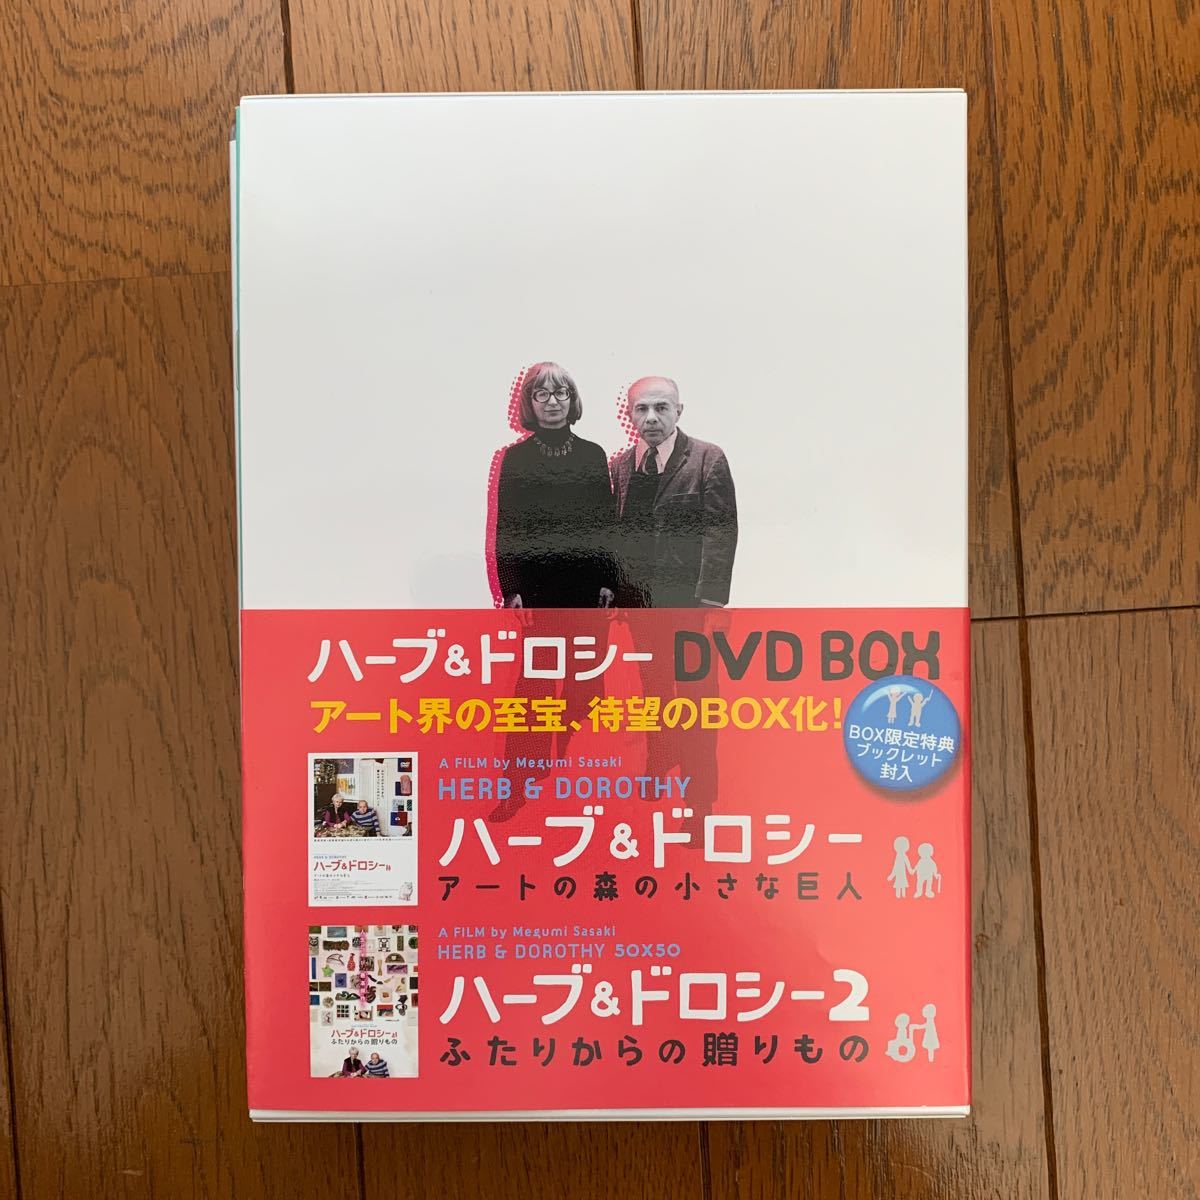 ハーブ&ドロシー DVD-BOX ハーバード&ドロシーボーゲル